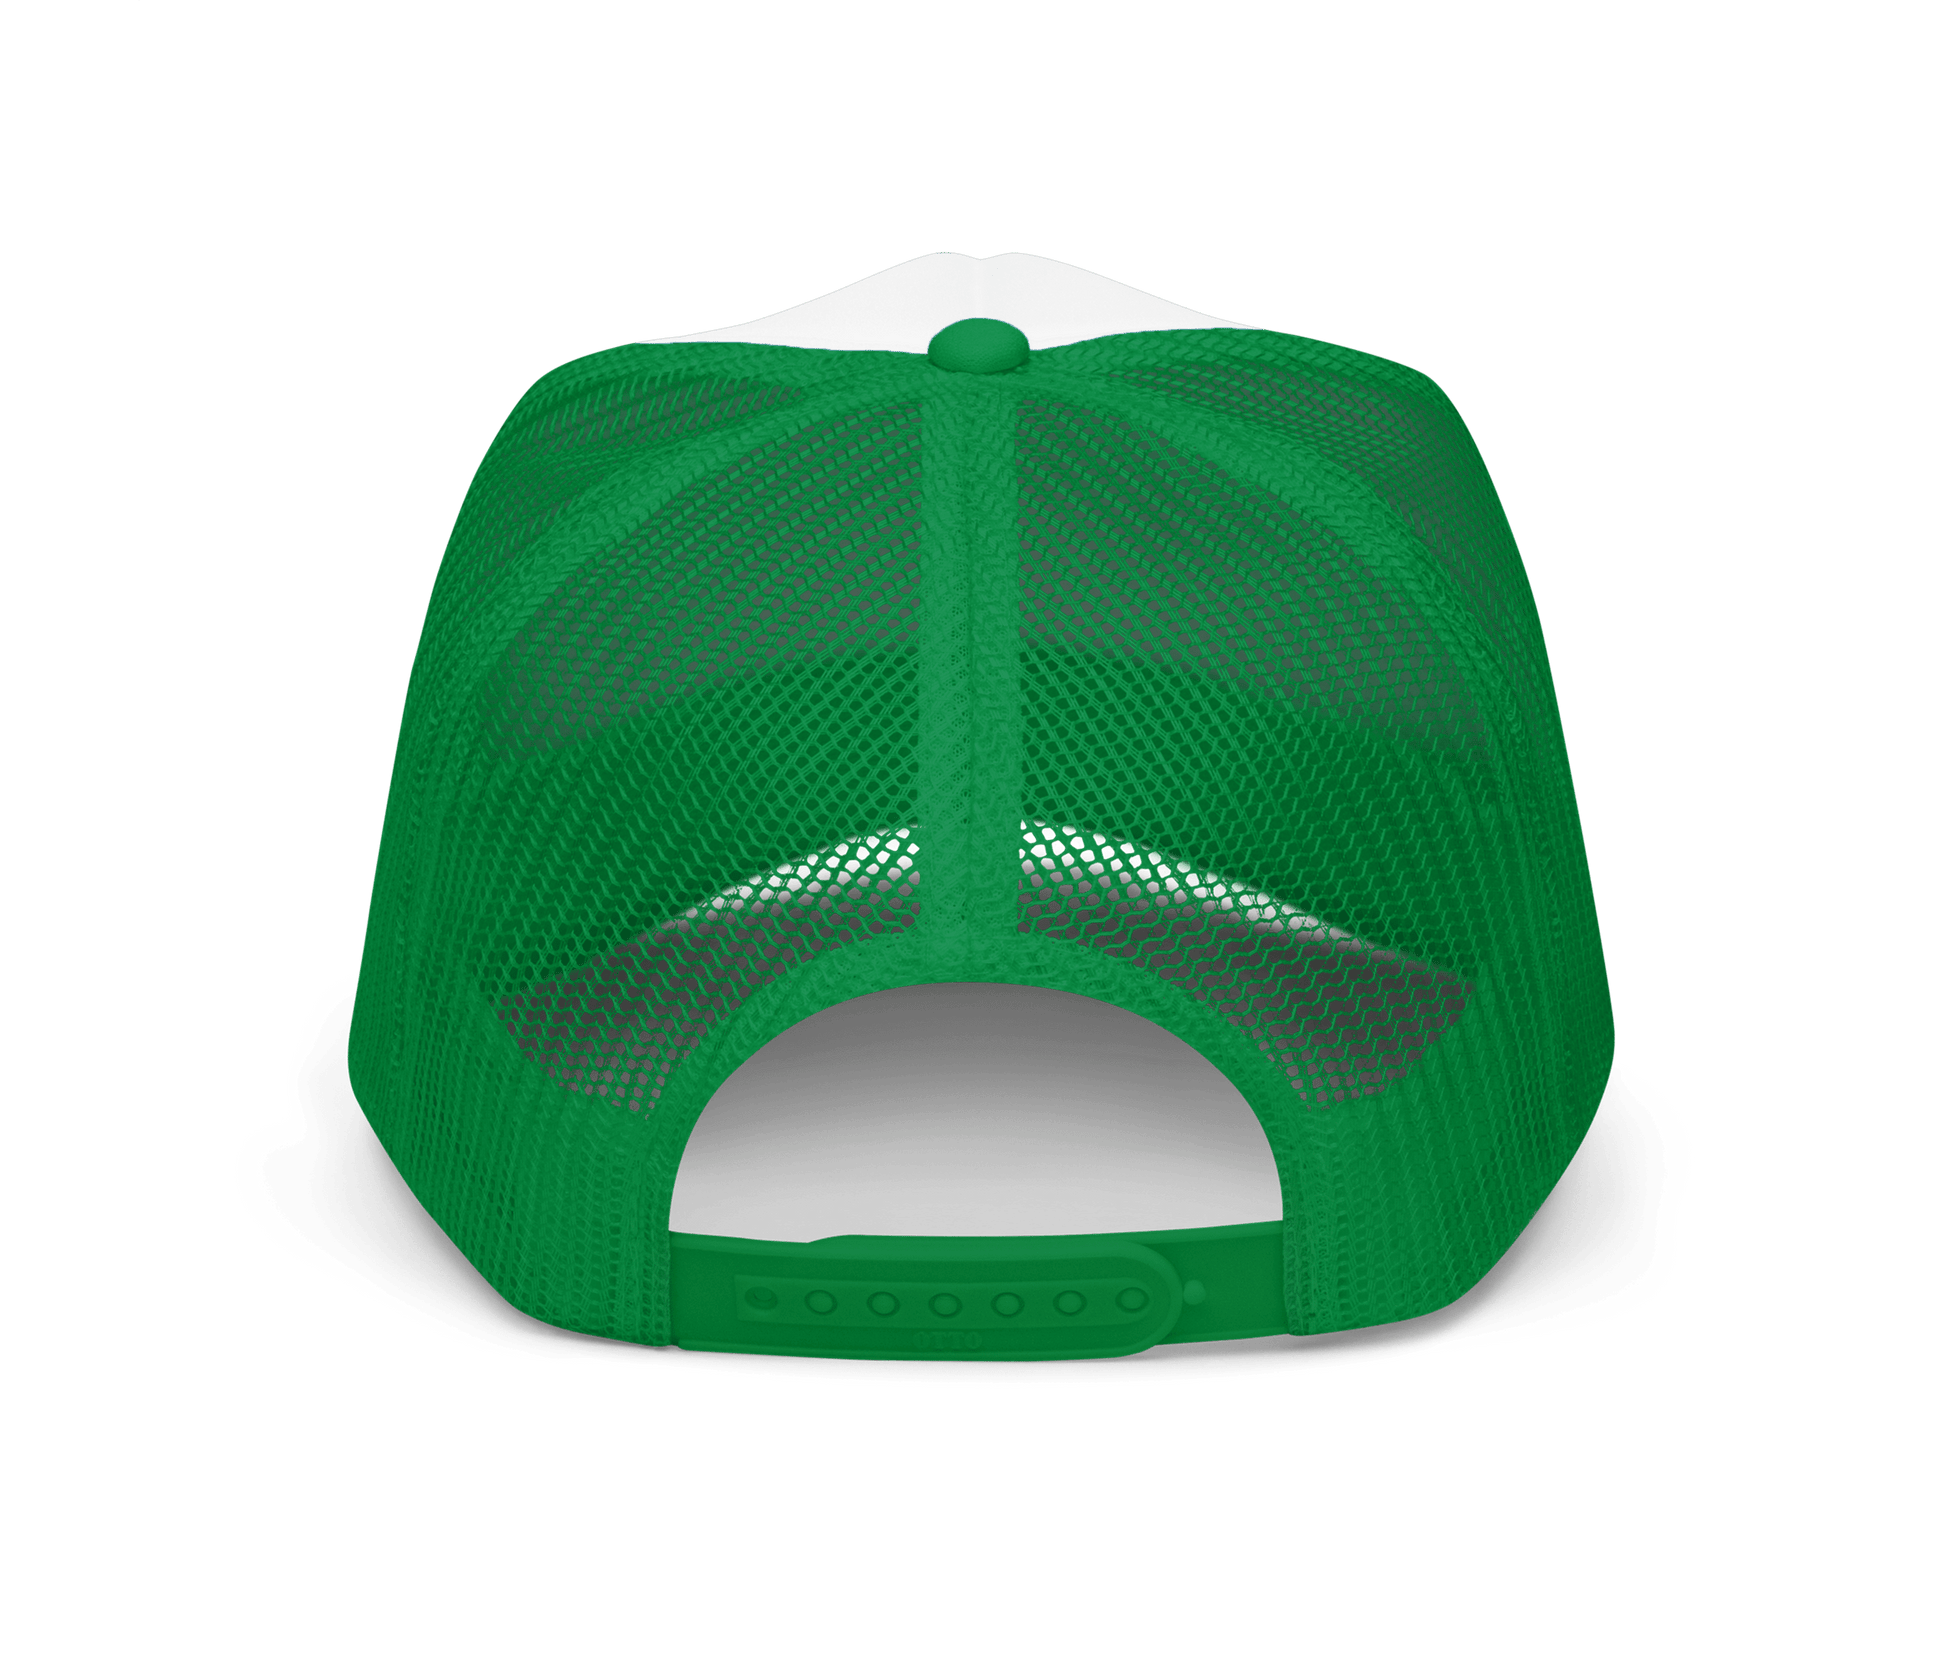 Kings Flavors Hat "Y2K" Green Mesh Hat